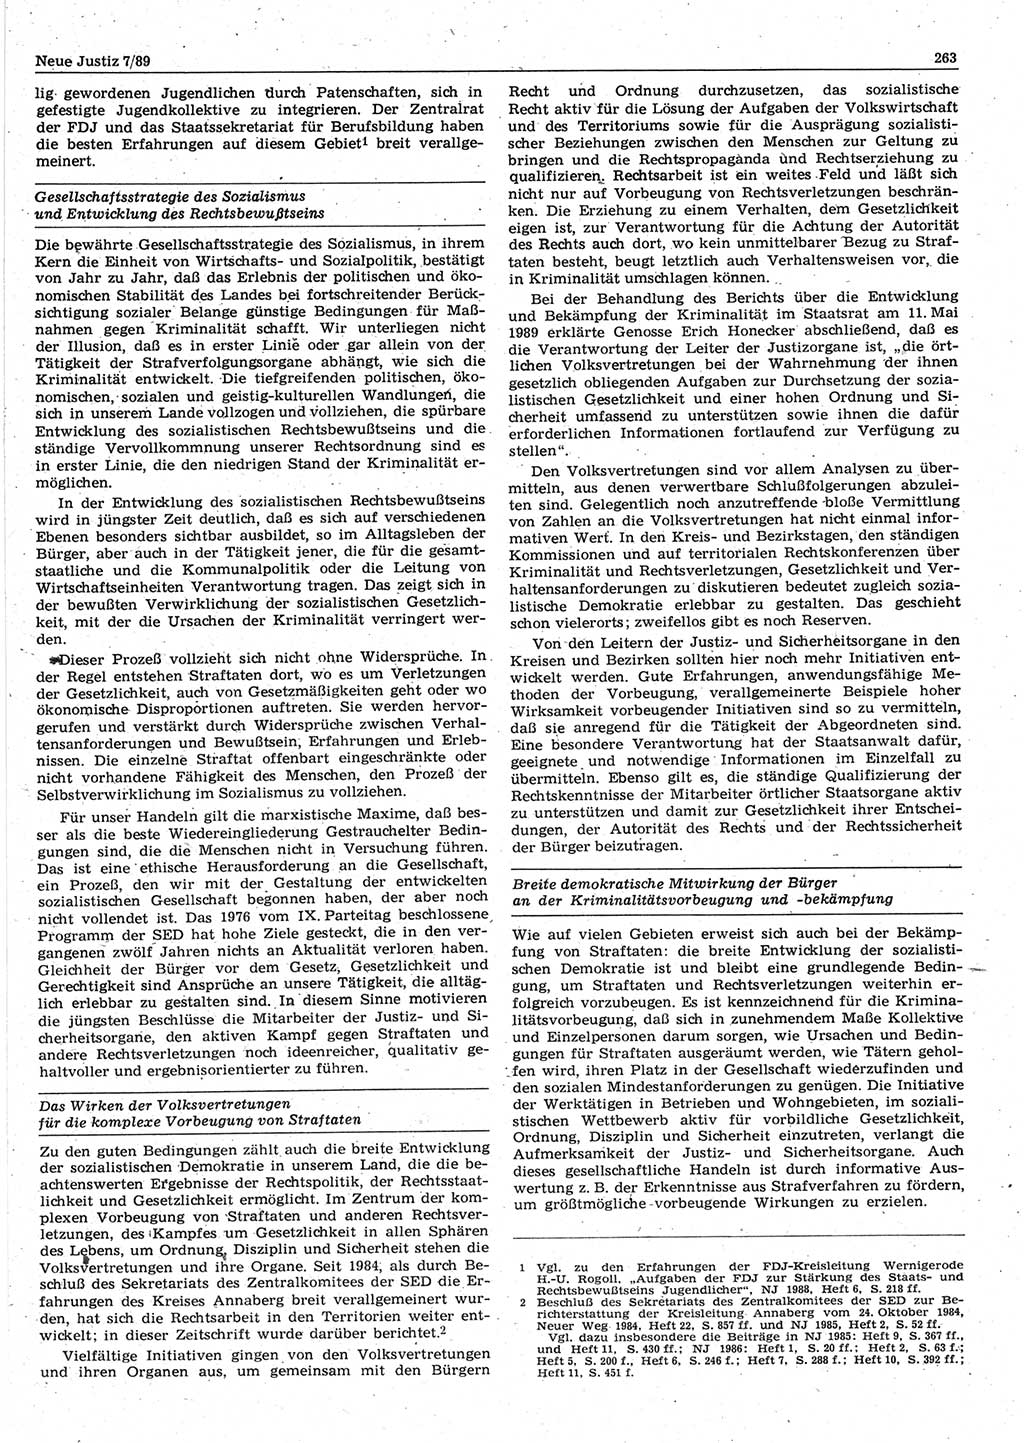 Neue Justiz (NJ), Zeitschrift für sozialistisches Recht und Gesetzlichkeit [Deutsche Demokratische Republik (DDR)], 43. Jahrgang 1989, Seite 263 (NJ DDR 1989, S. 263)